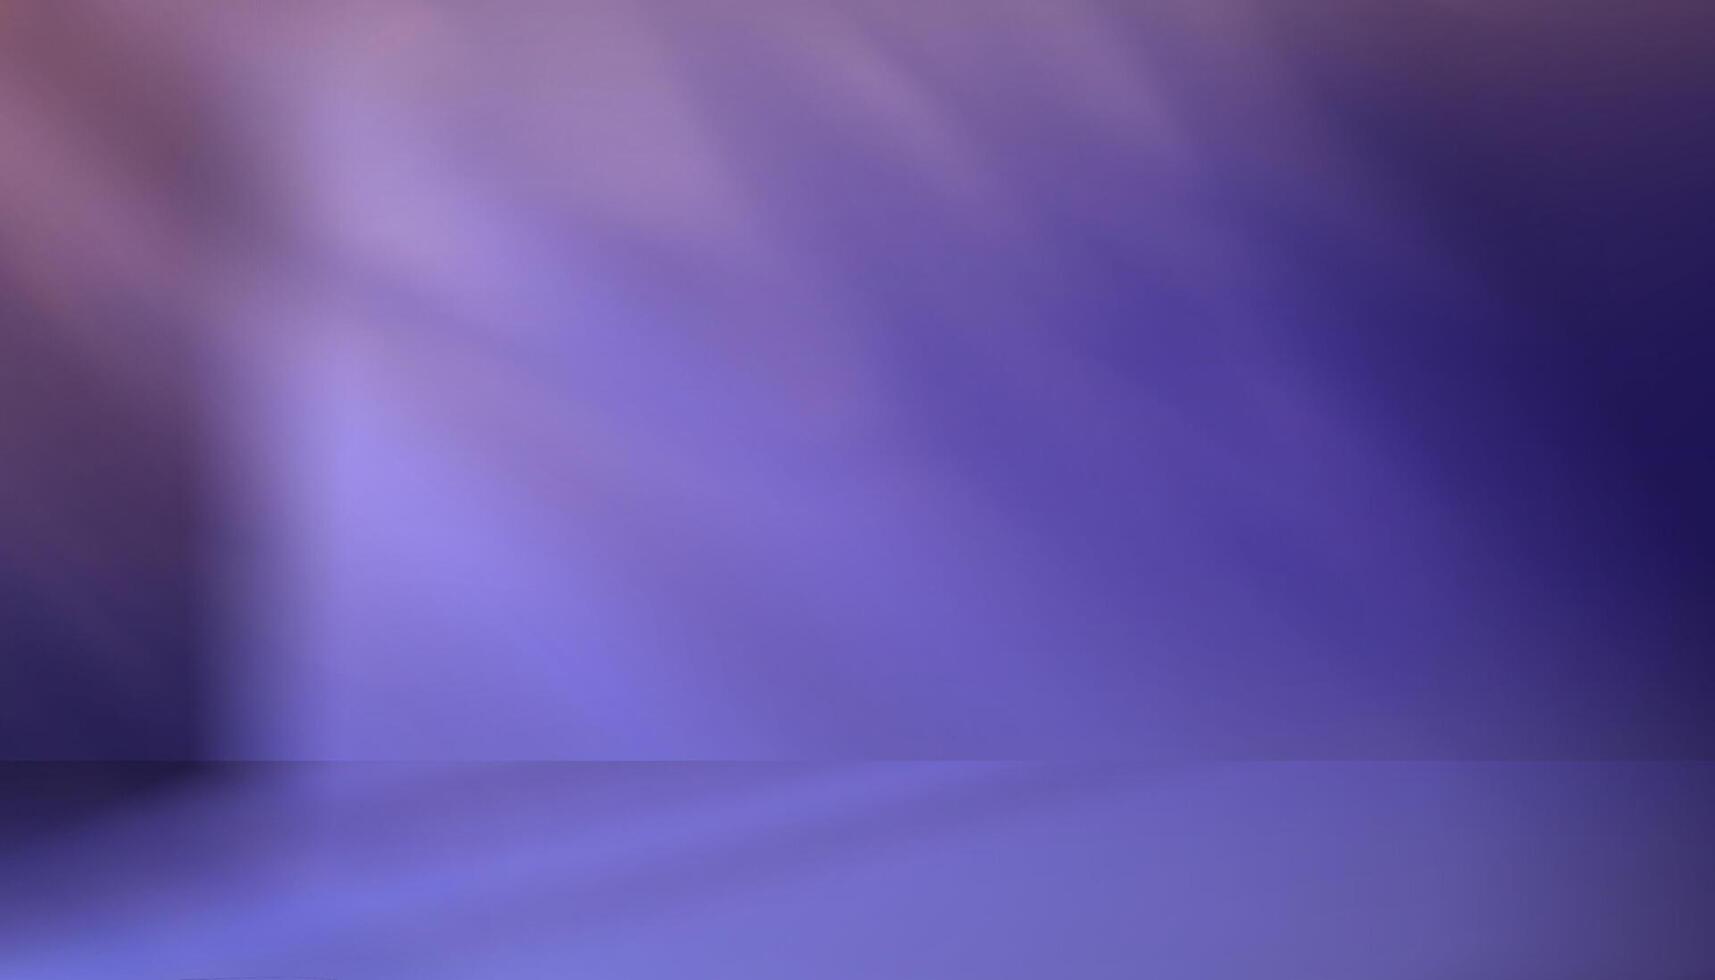 púrpura estudio fondo,vacío habitación lila tresillo color pared y suelo.telón de fondo monitor podio con borroso rosa, violeta y azul plantilla.vector bandera futurista neón para producto futuro ciberespacio vector